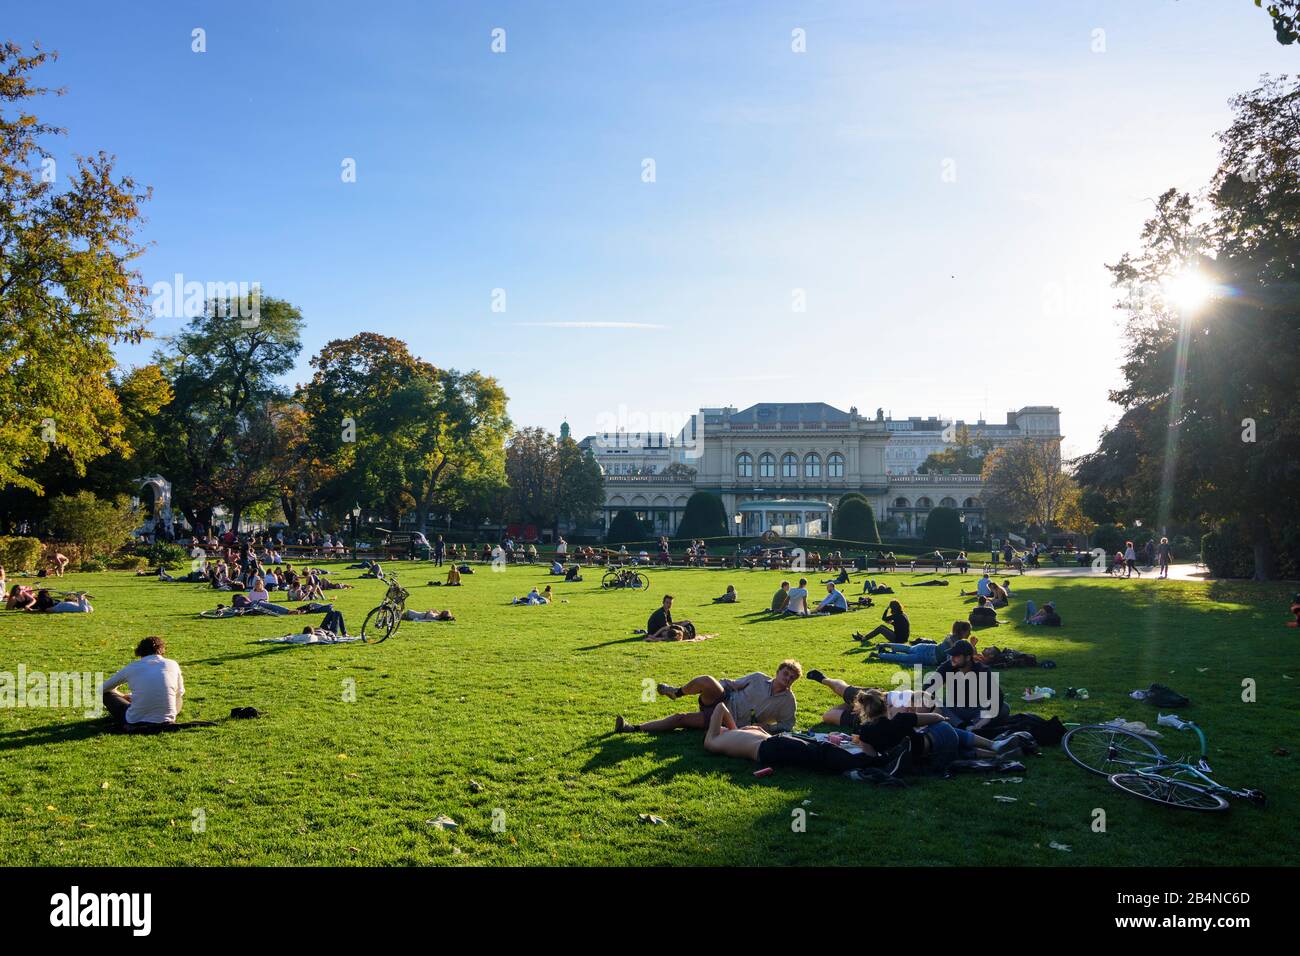 Vienne, parc Stadtpark, prairie, bains de soleil, parler, maison Kursalon Hübner en Autriche, Wien, 01. Quartier, vieille ville Banque D'Images